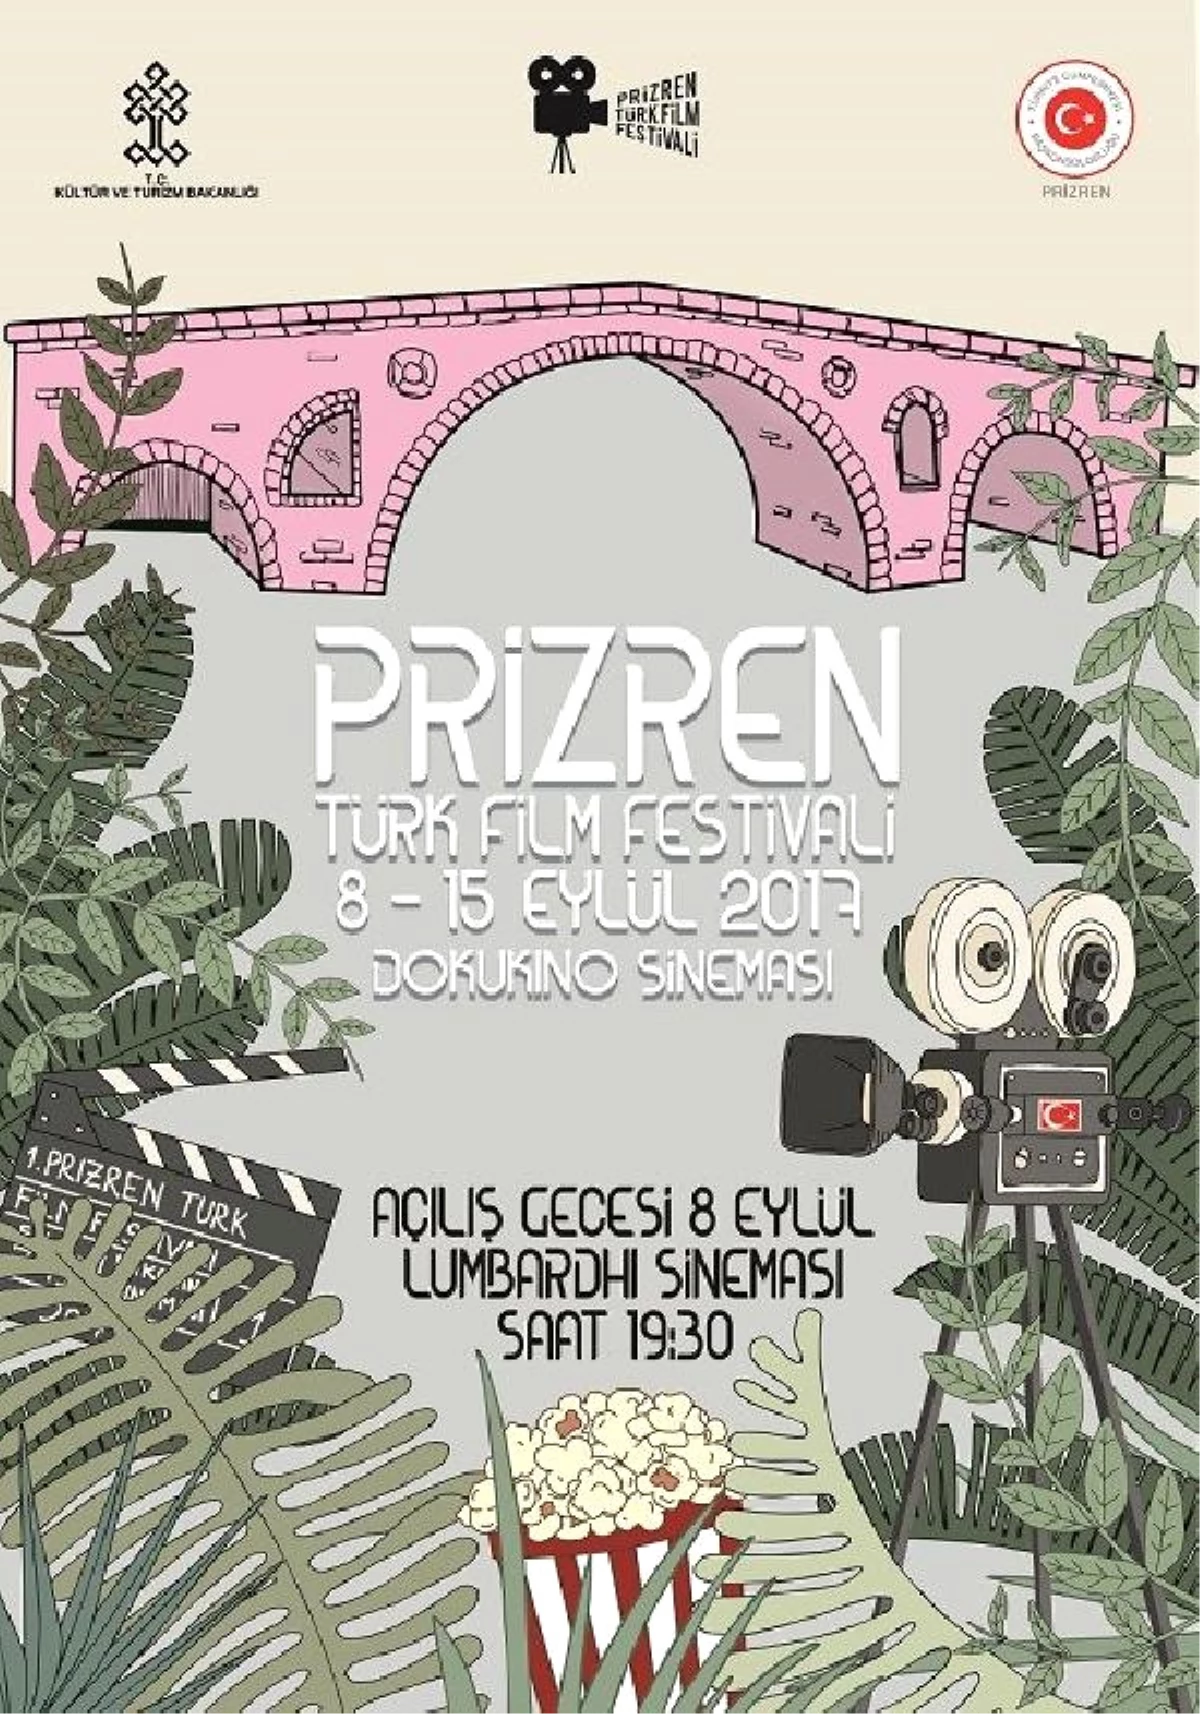 Türkiye Başkonsolosluğu "Prizren Türk Film Festivali" Düzenliyor